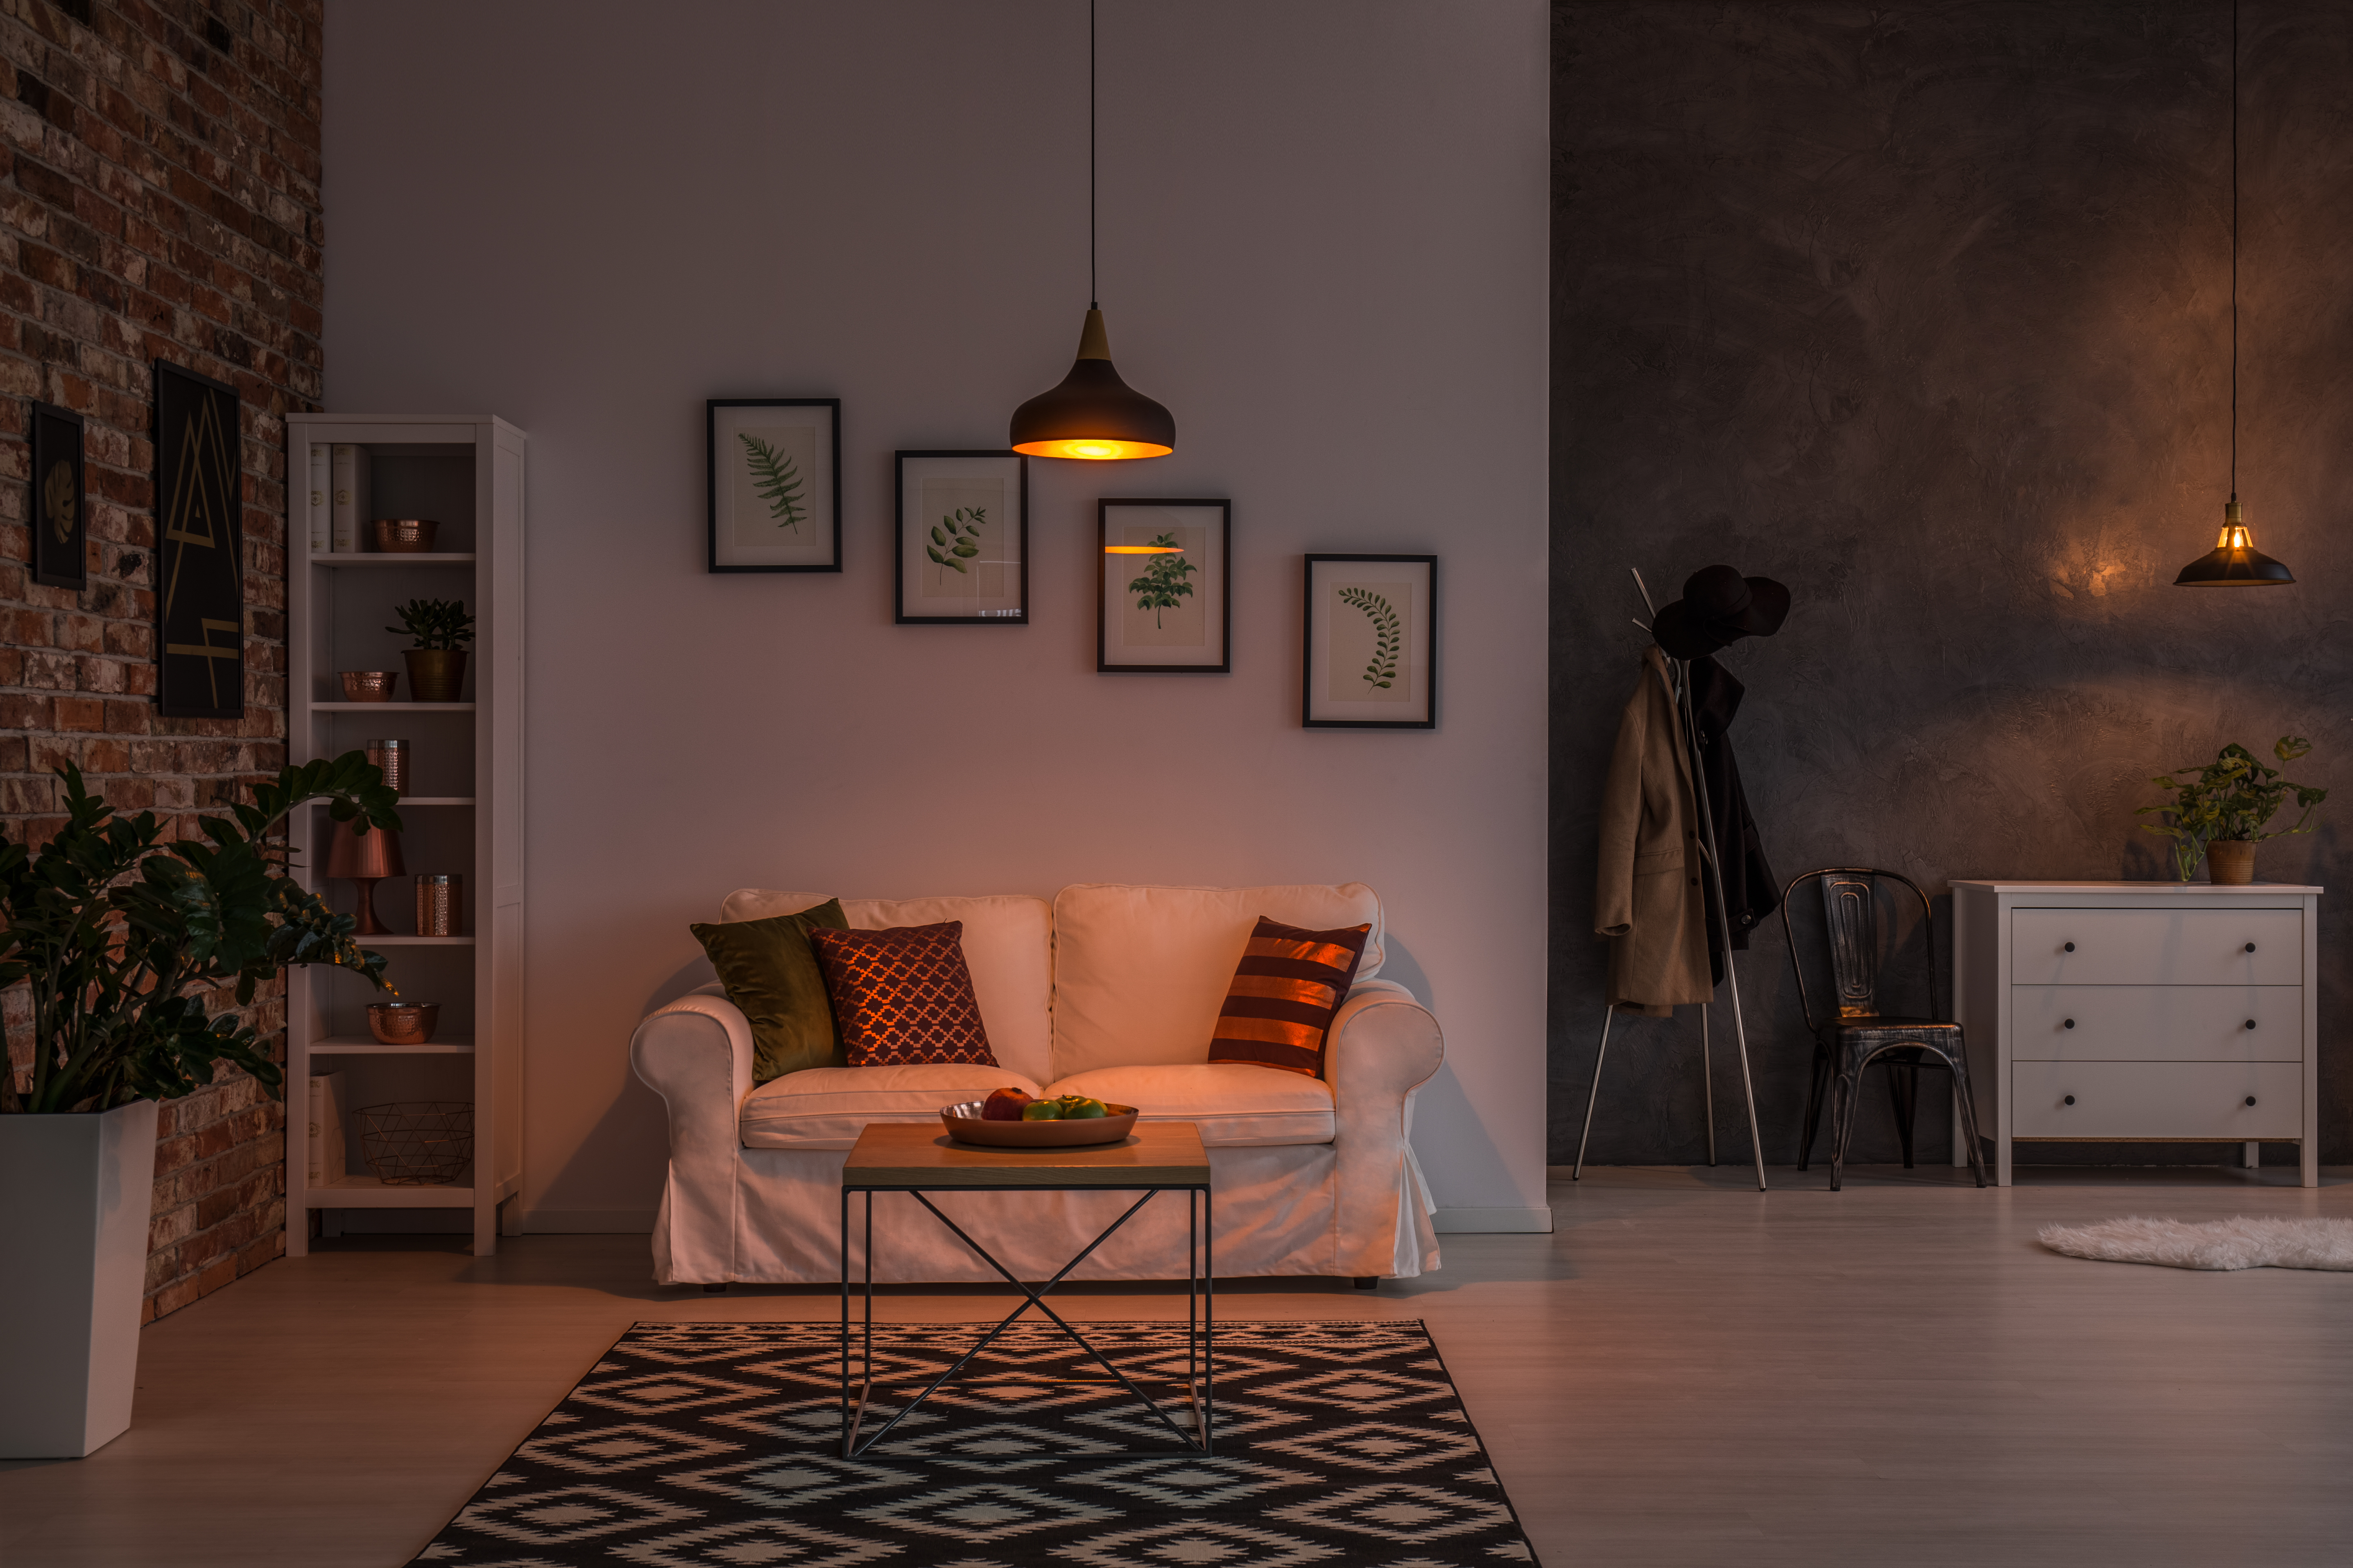 Salón abierto con sofá, alfombra, lámpara y estantería. | Fuente: Shutterstock